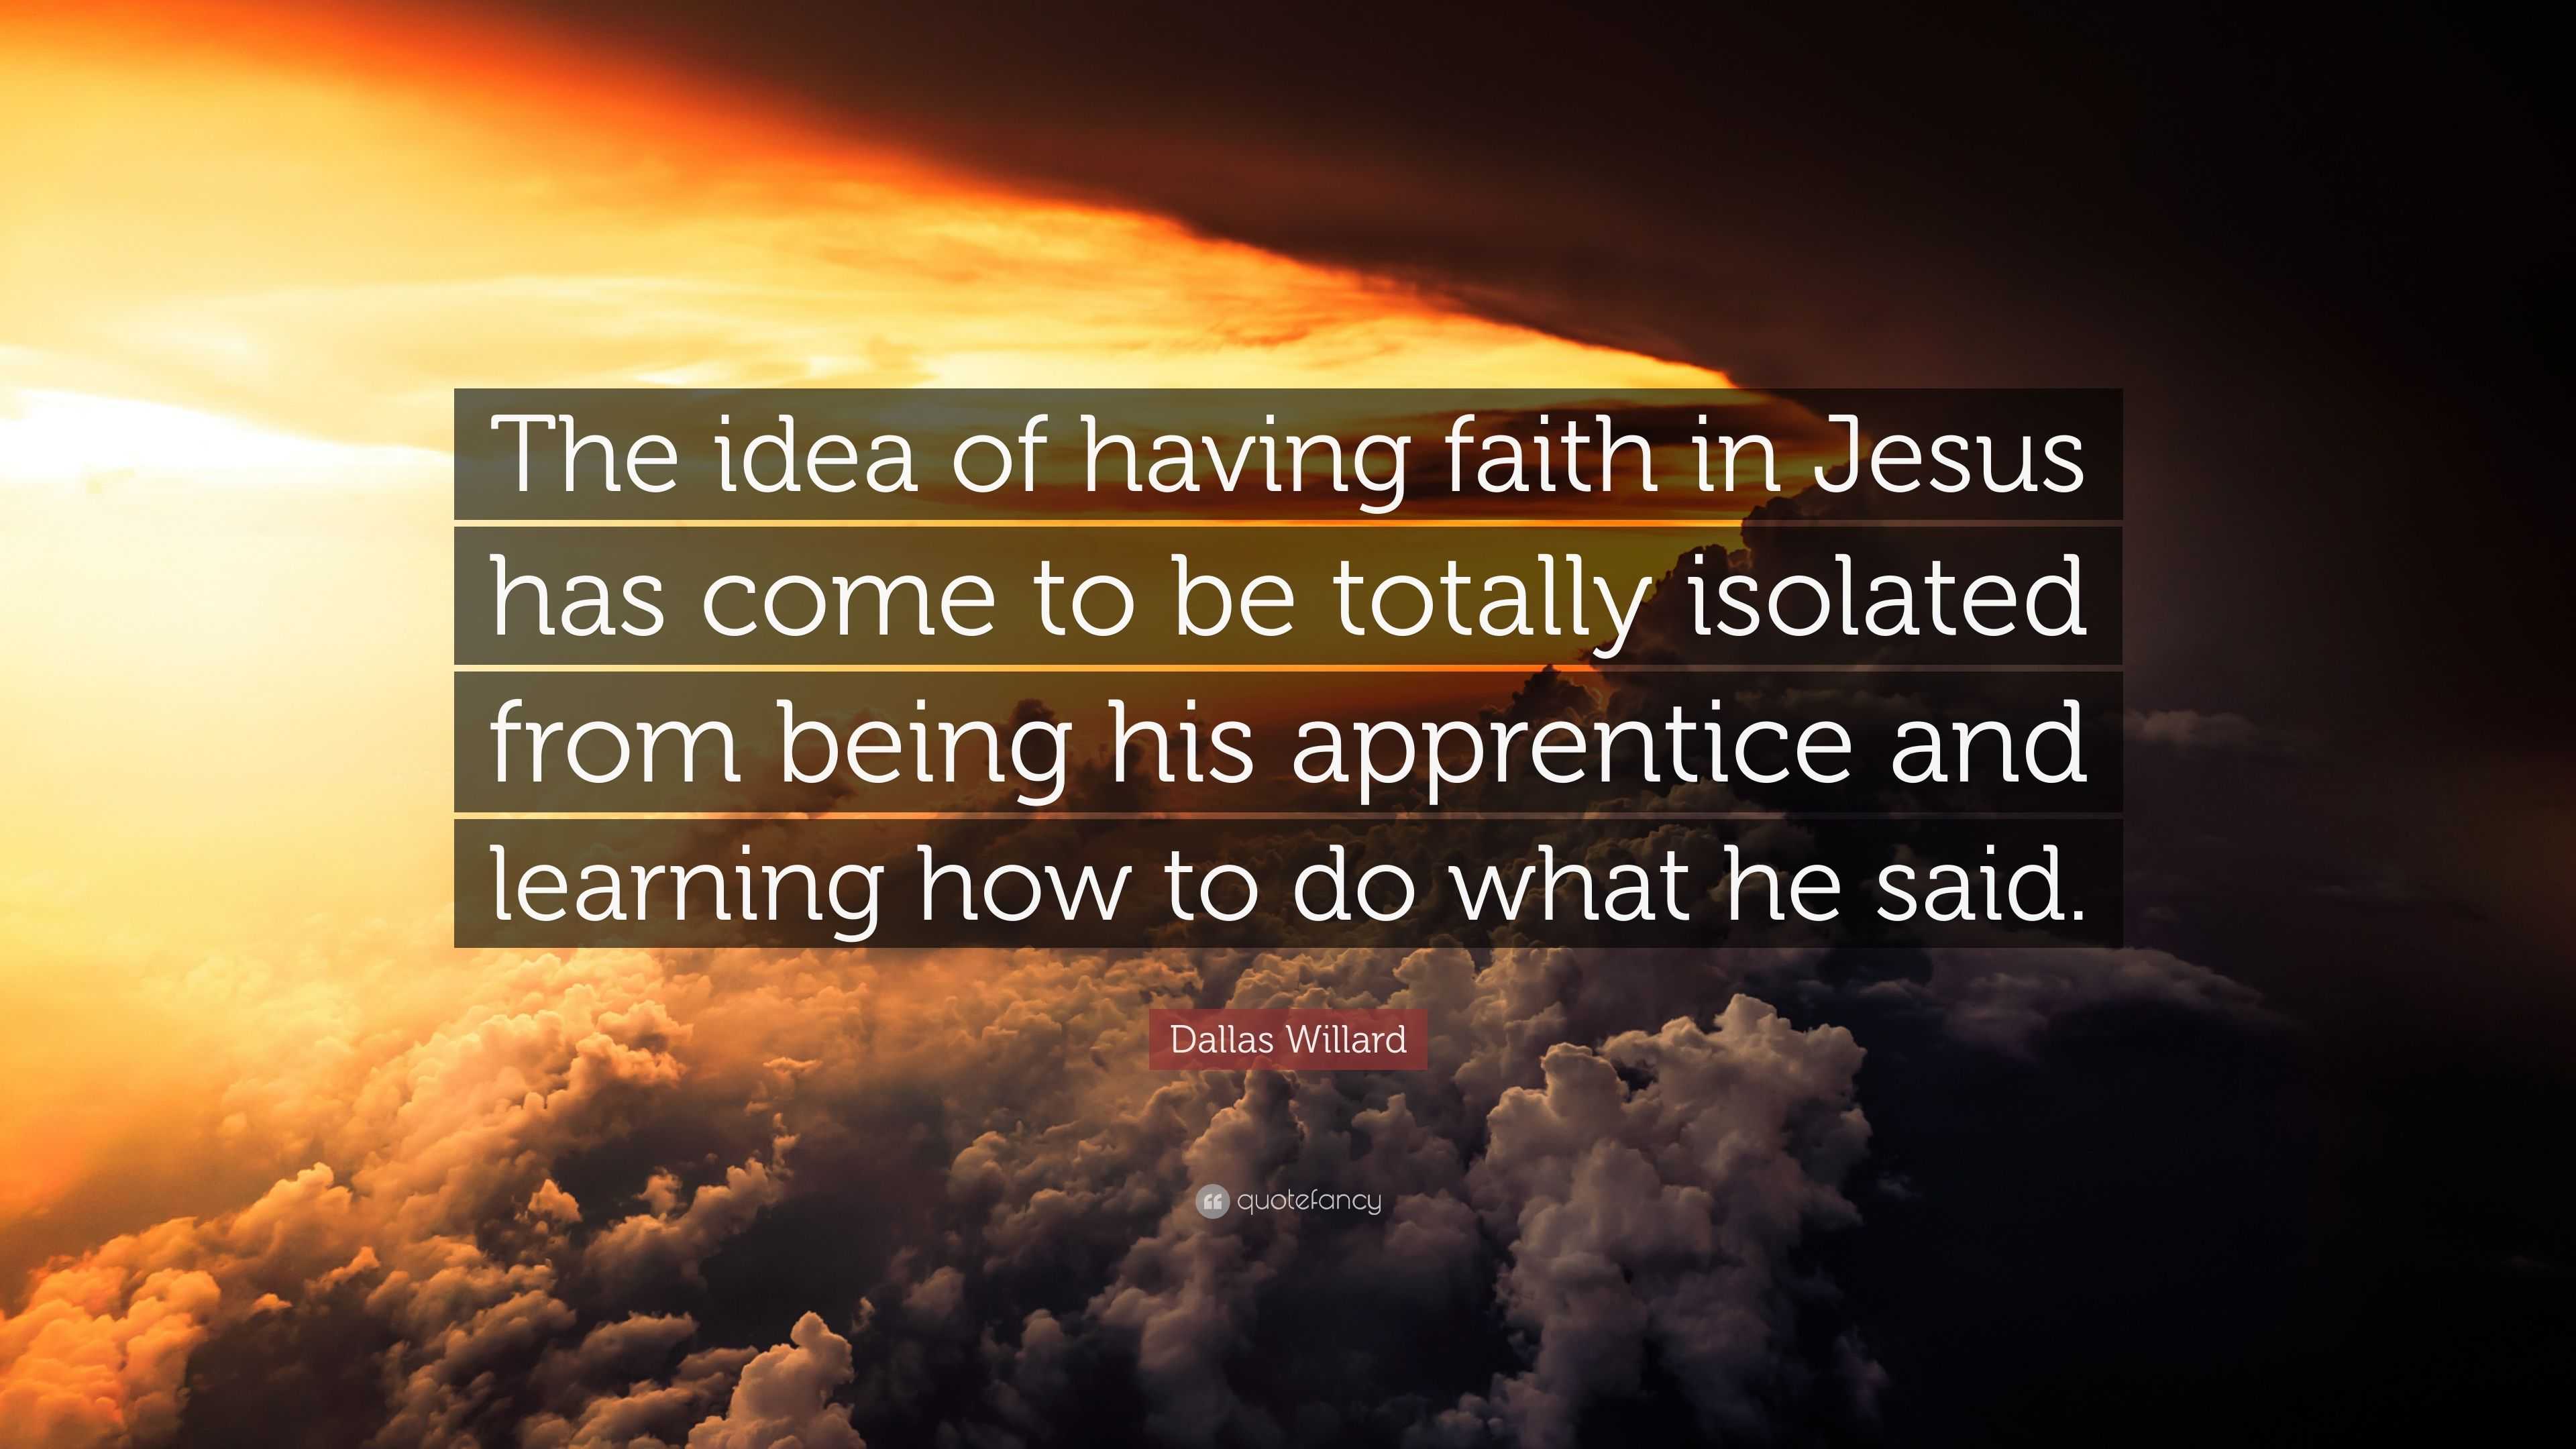 Dallas Willard Quote: “The idea of having faith in Jesus has come to be ...